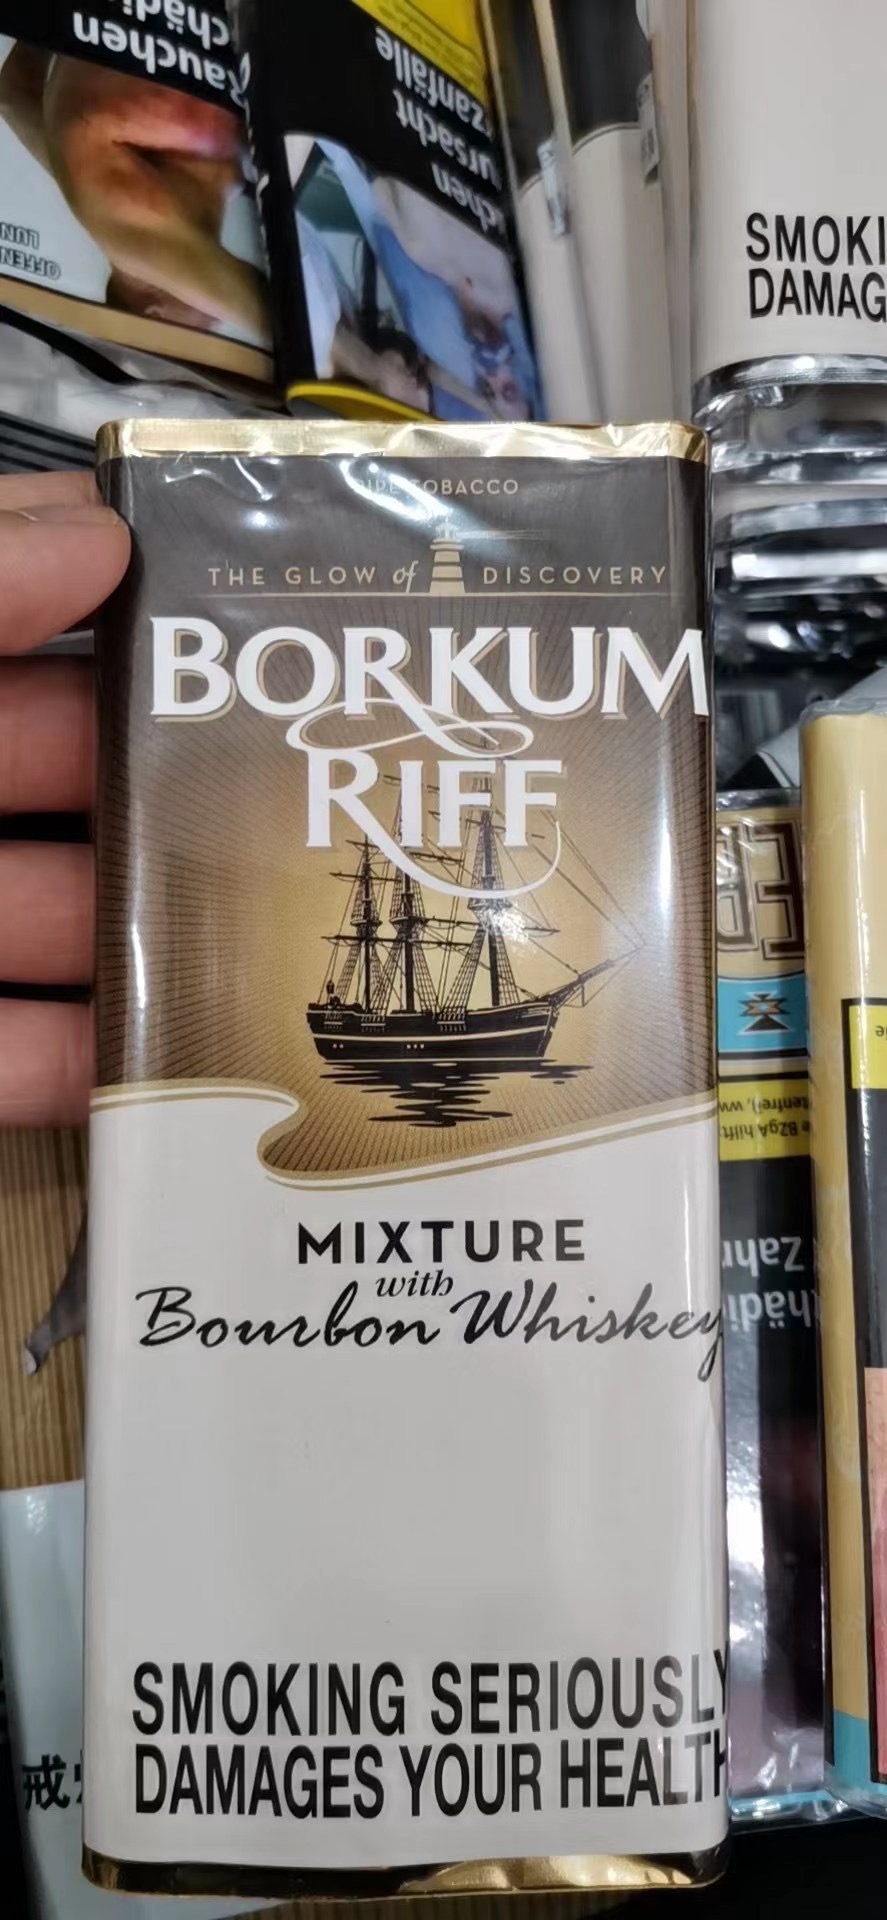 borkum riff帆船烟丝专卖店